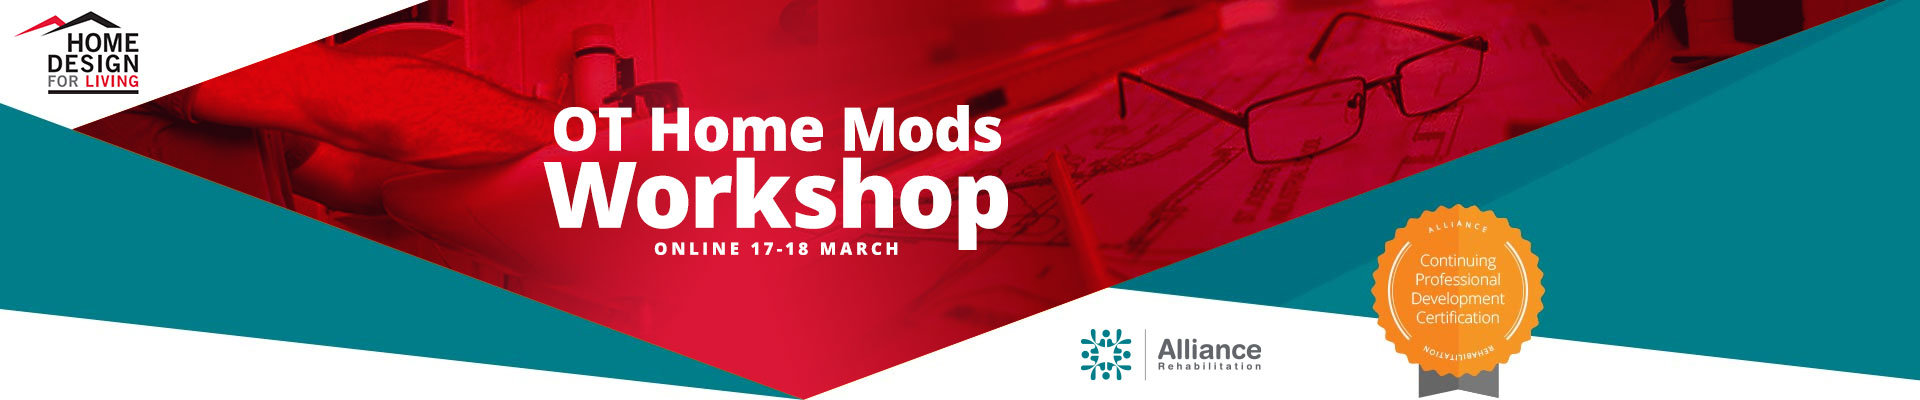 OT Home Mods Workshop